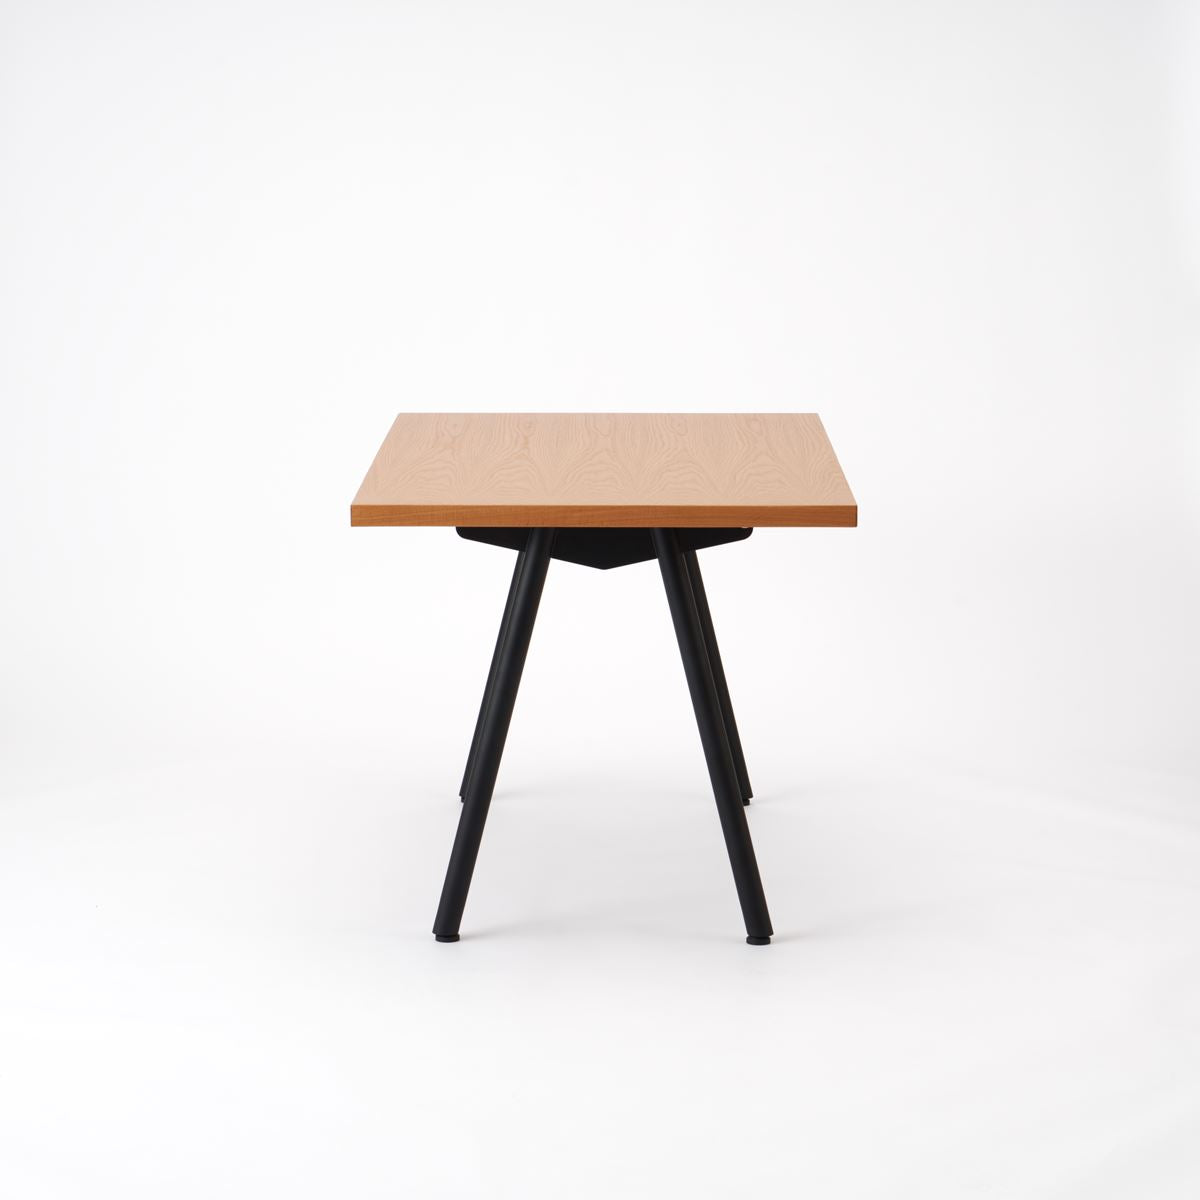 KUUM  Table W1200 × D800 - オーク突板ナチュラル / クーム テーブル